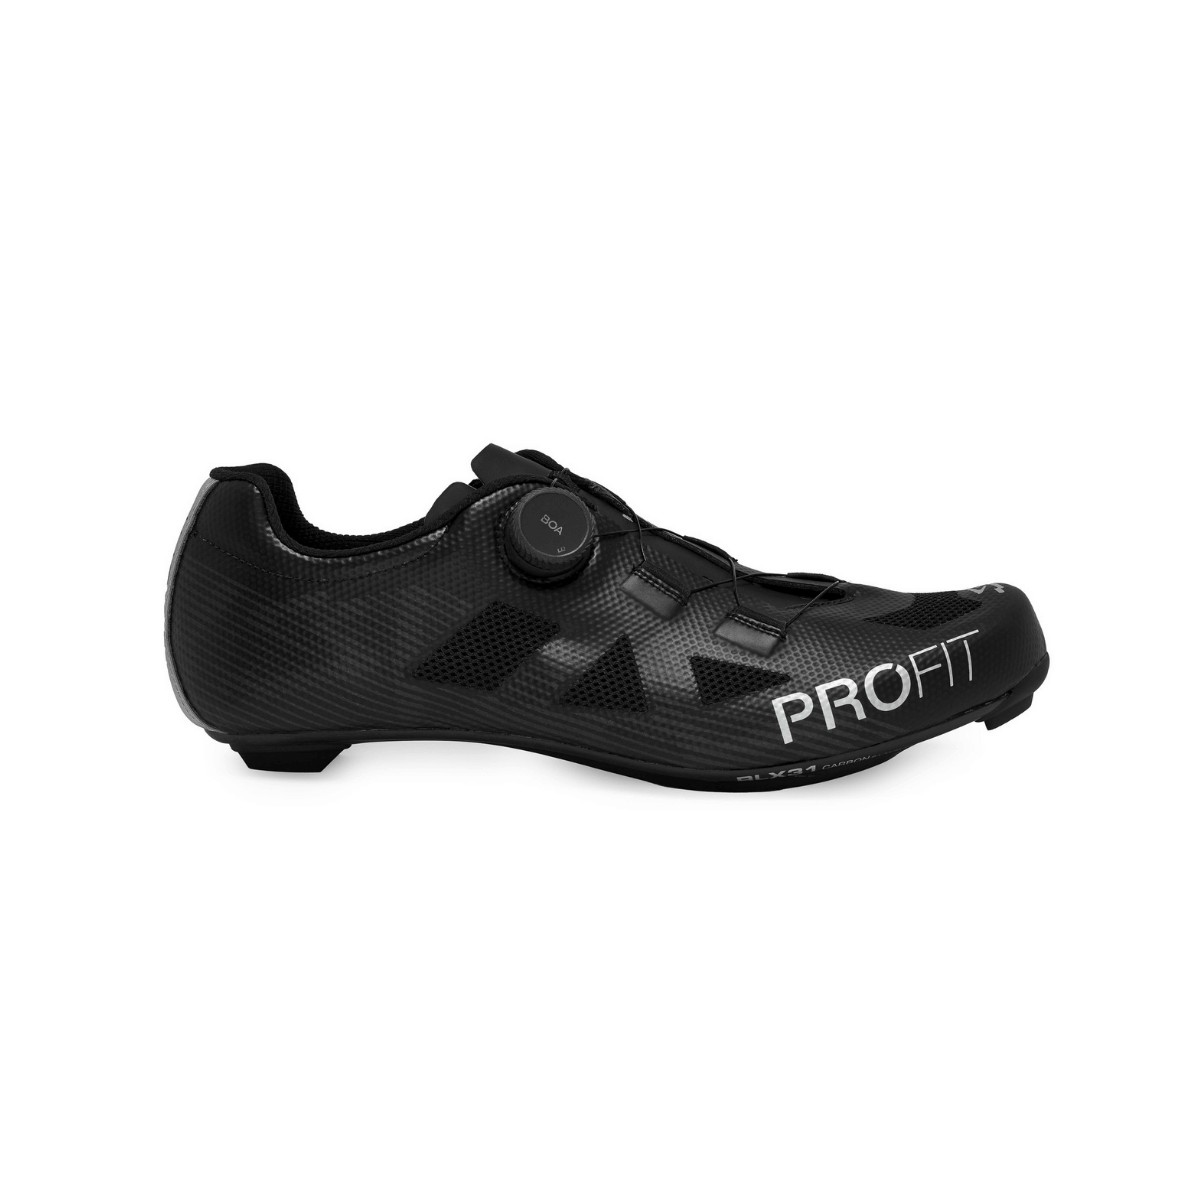 Spiuk Profit Road Carbon Black Unisex Shoes, Size 41 - EUR